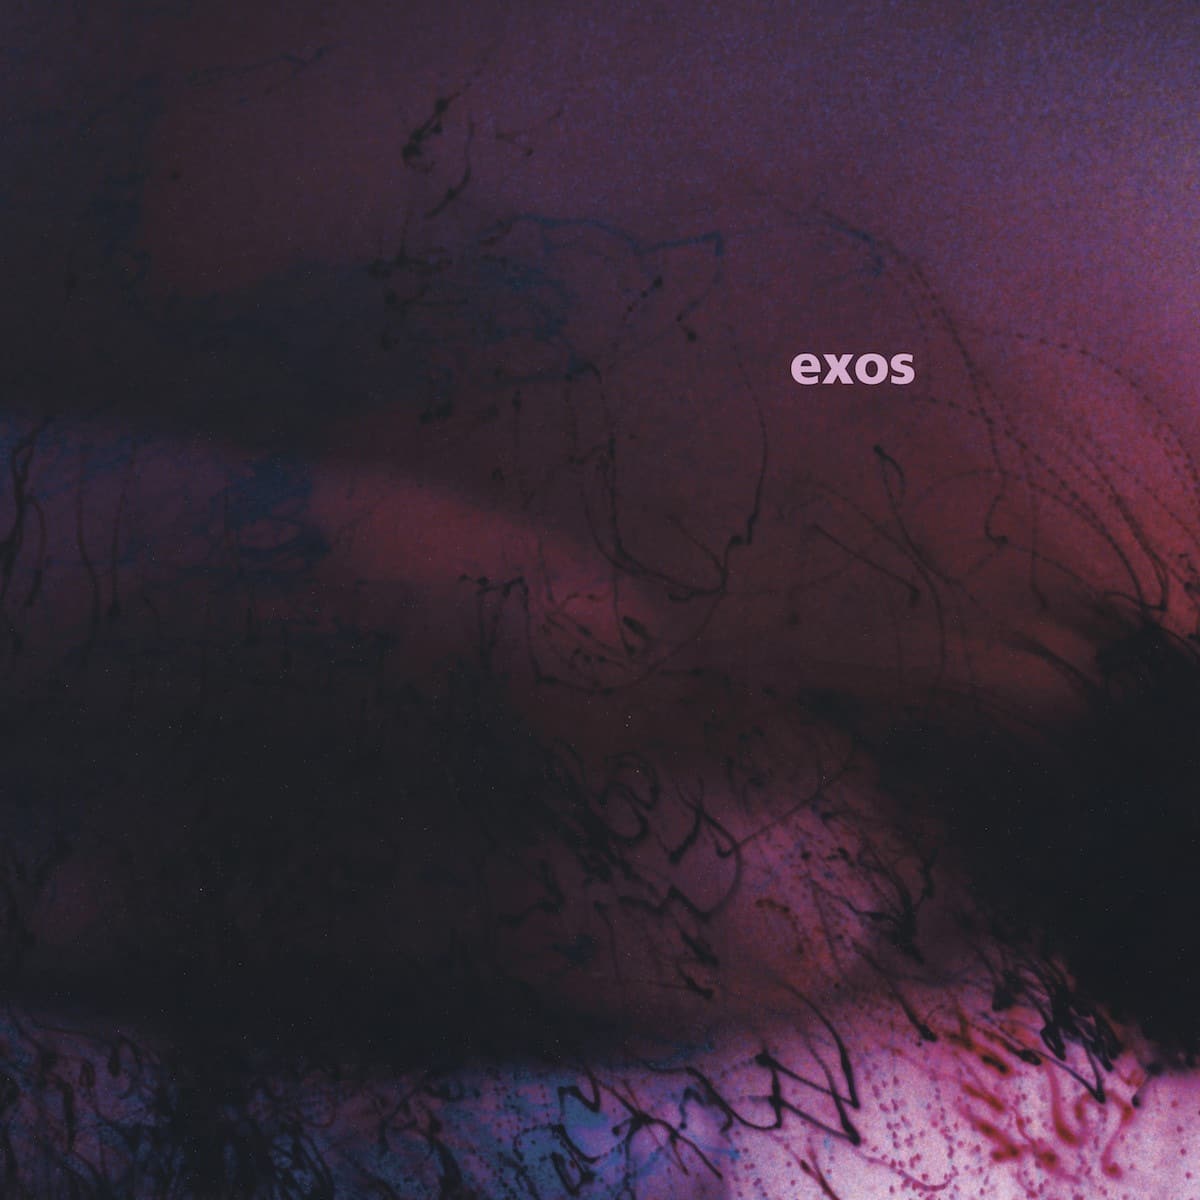 Exos - Alien Eyes - FIGUREX03 - FIGURE